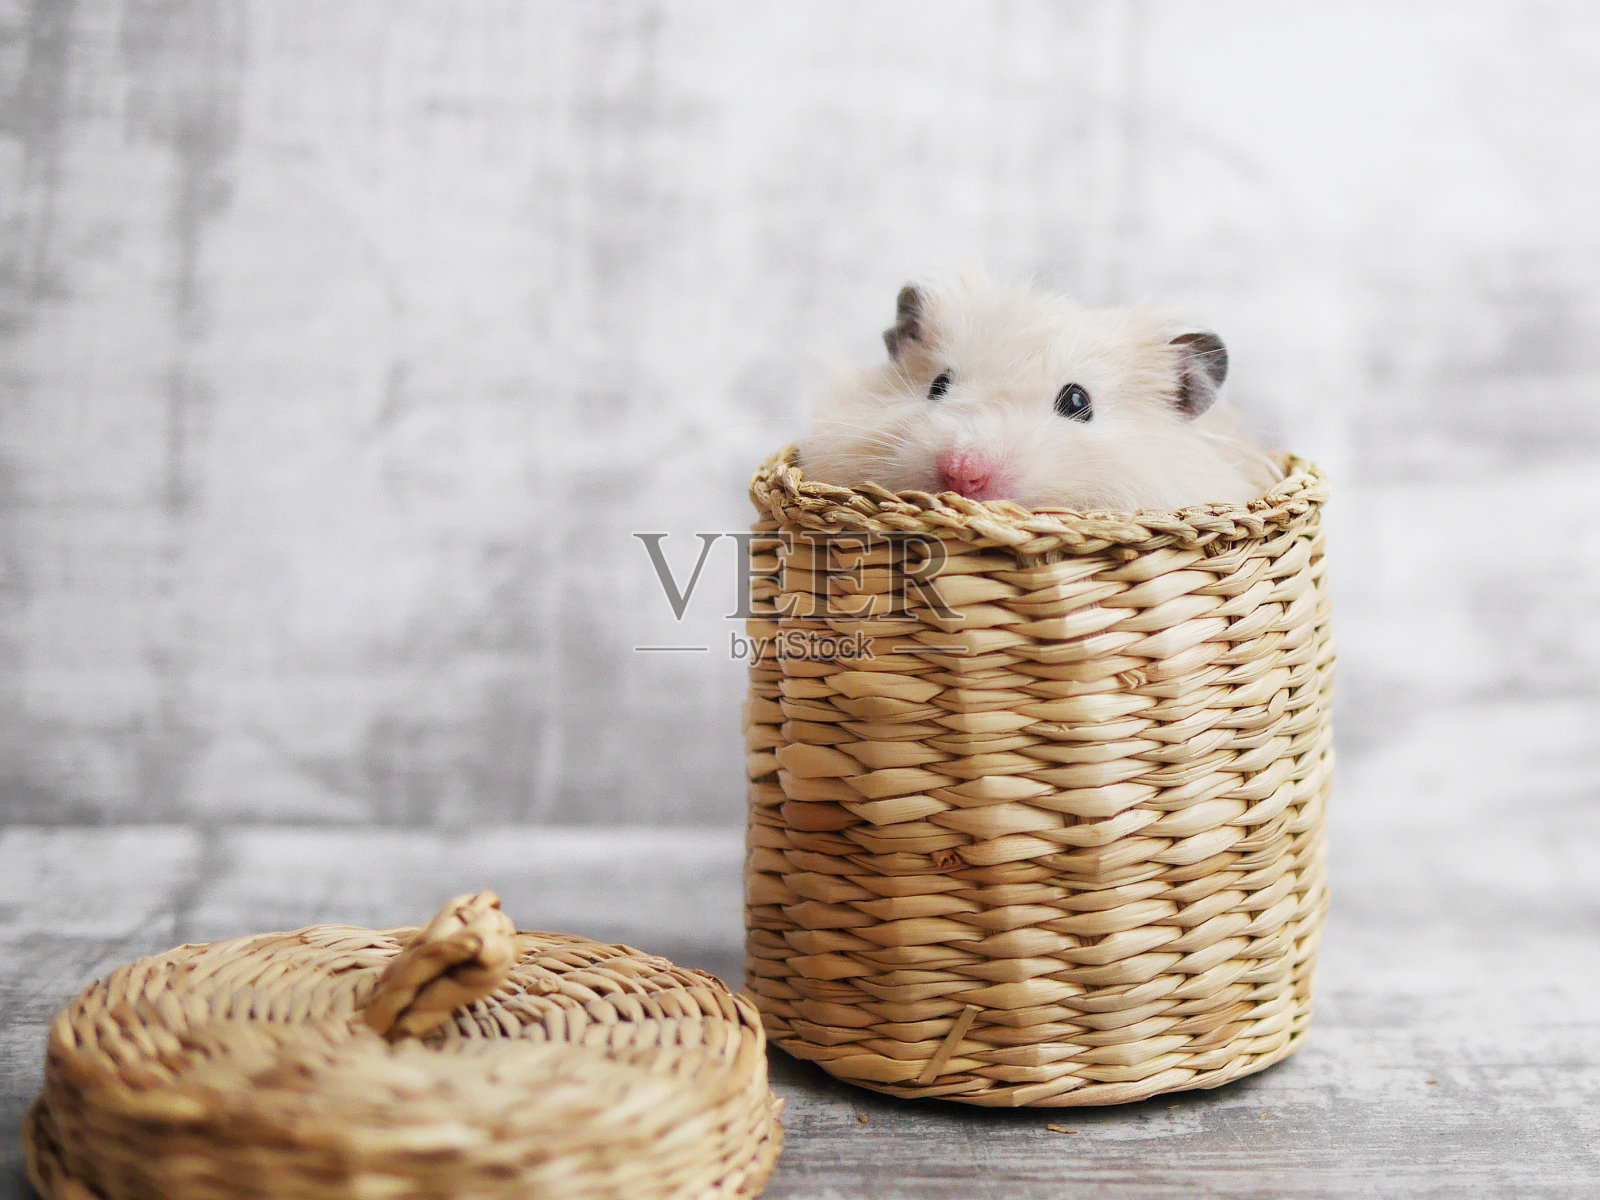 一只可爱的毛茸茸的仓鼠从柳条篮子里探出来。灰色漂白背景。有趣的动物。有动物的贺卡。照片摄影图片